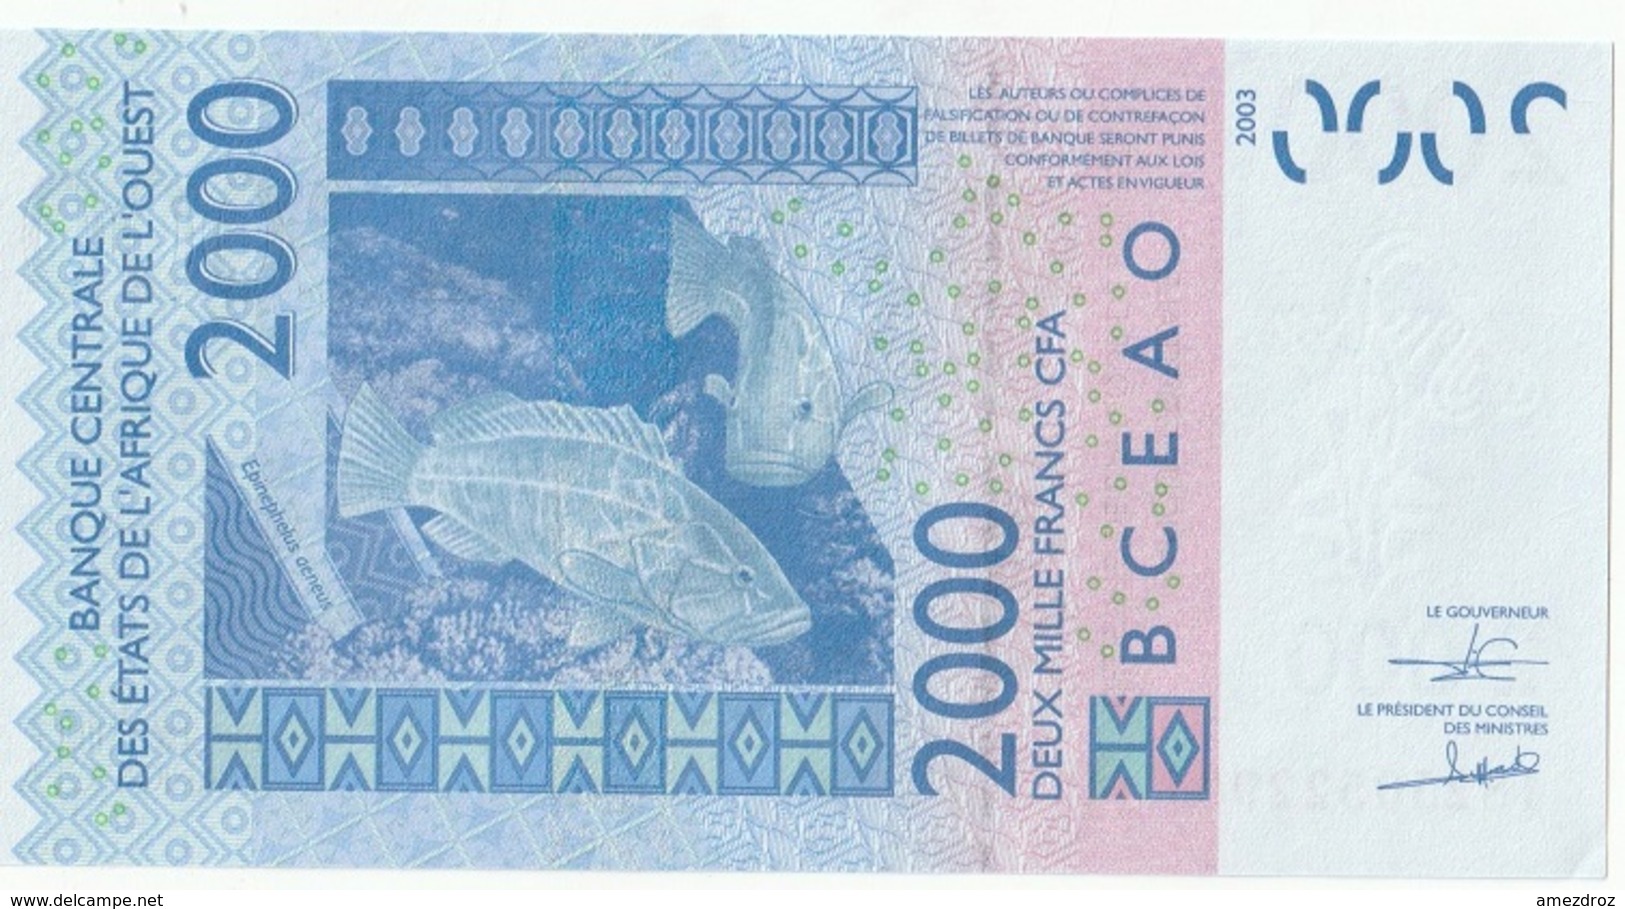 Billet De 2000 Francs CFA XOF Non Circulé Afrique De L'Ouest Origine Cote D'Ivoire - Côte D'Ivoire